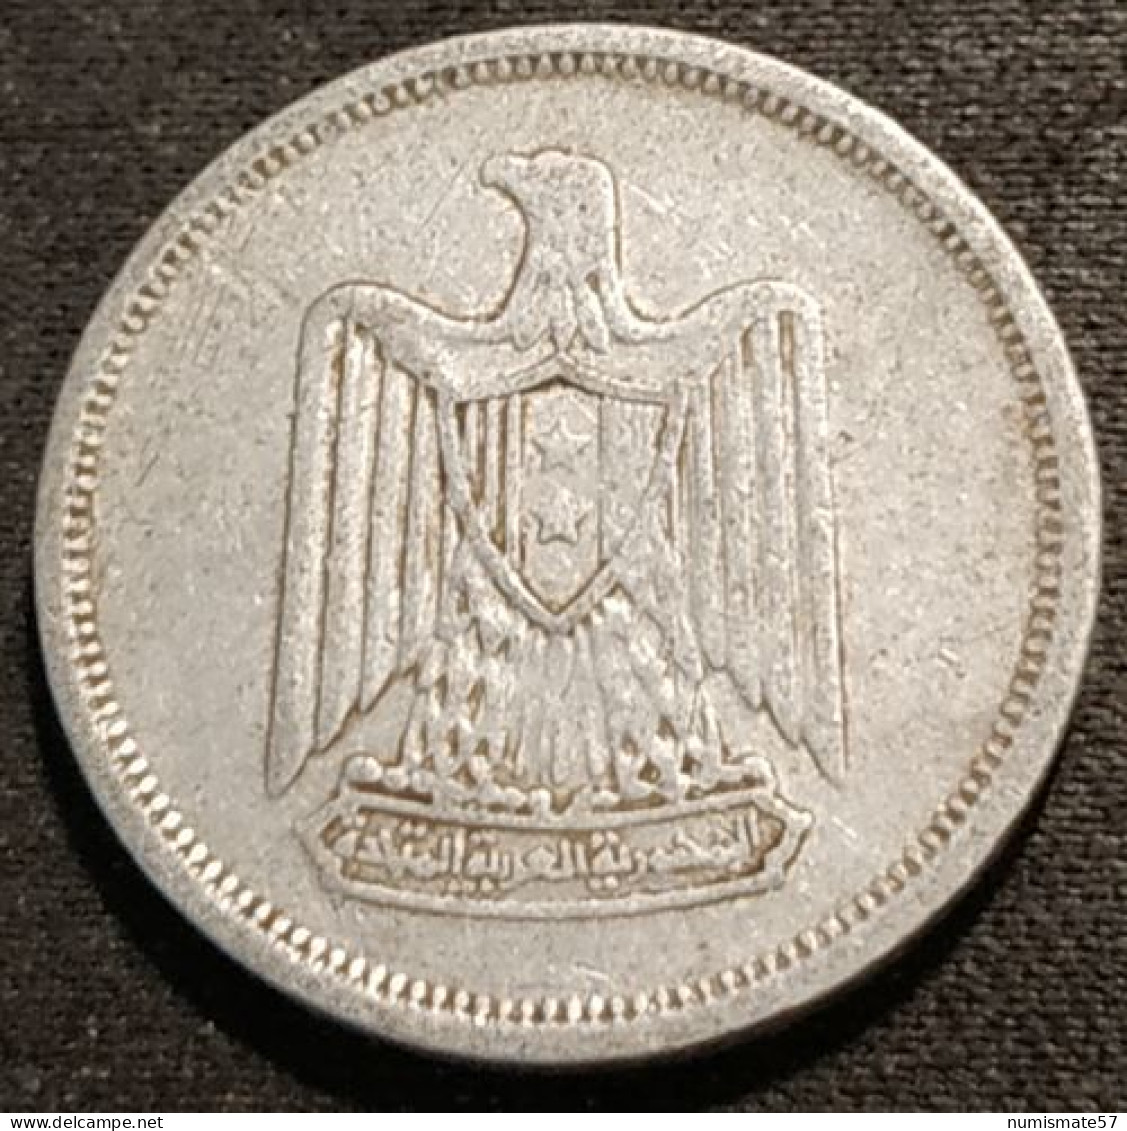 EGYPTE - EGYPT - 5 MILLIEMES 1967 ( 1386 ) - KM 410 - Egypte